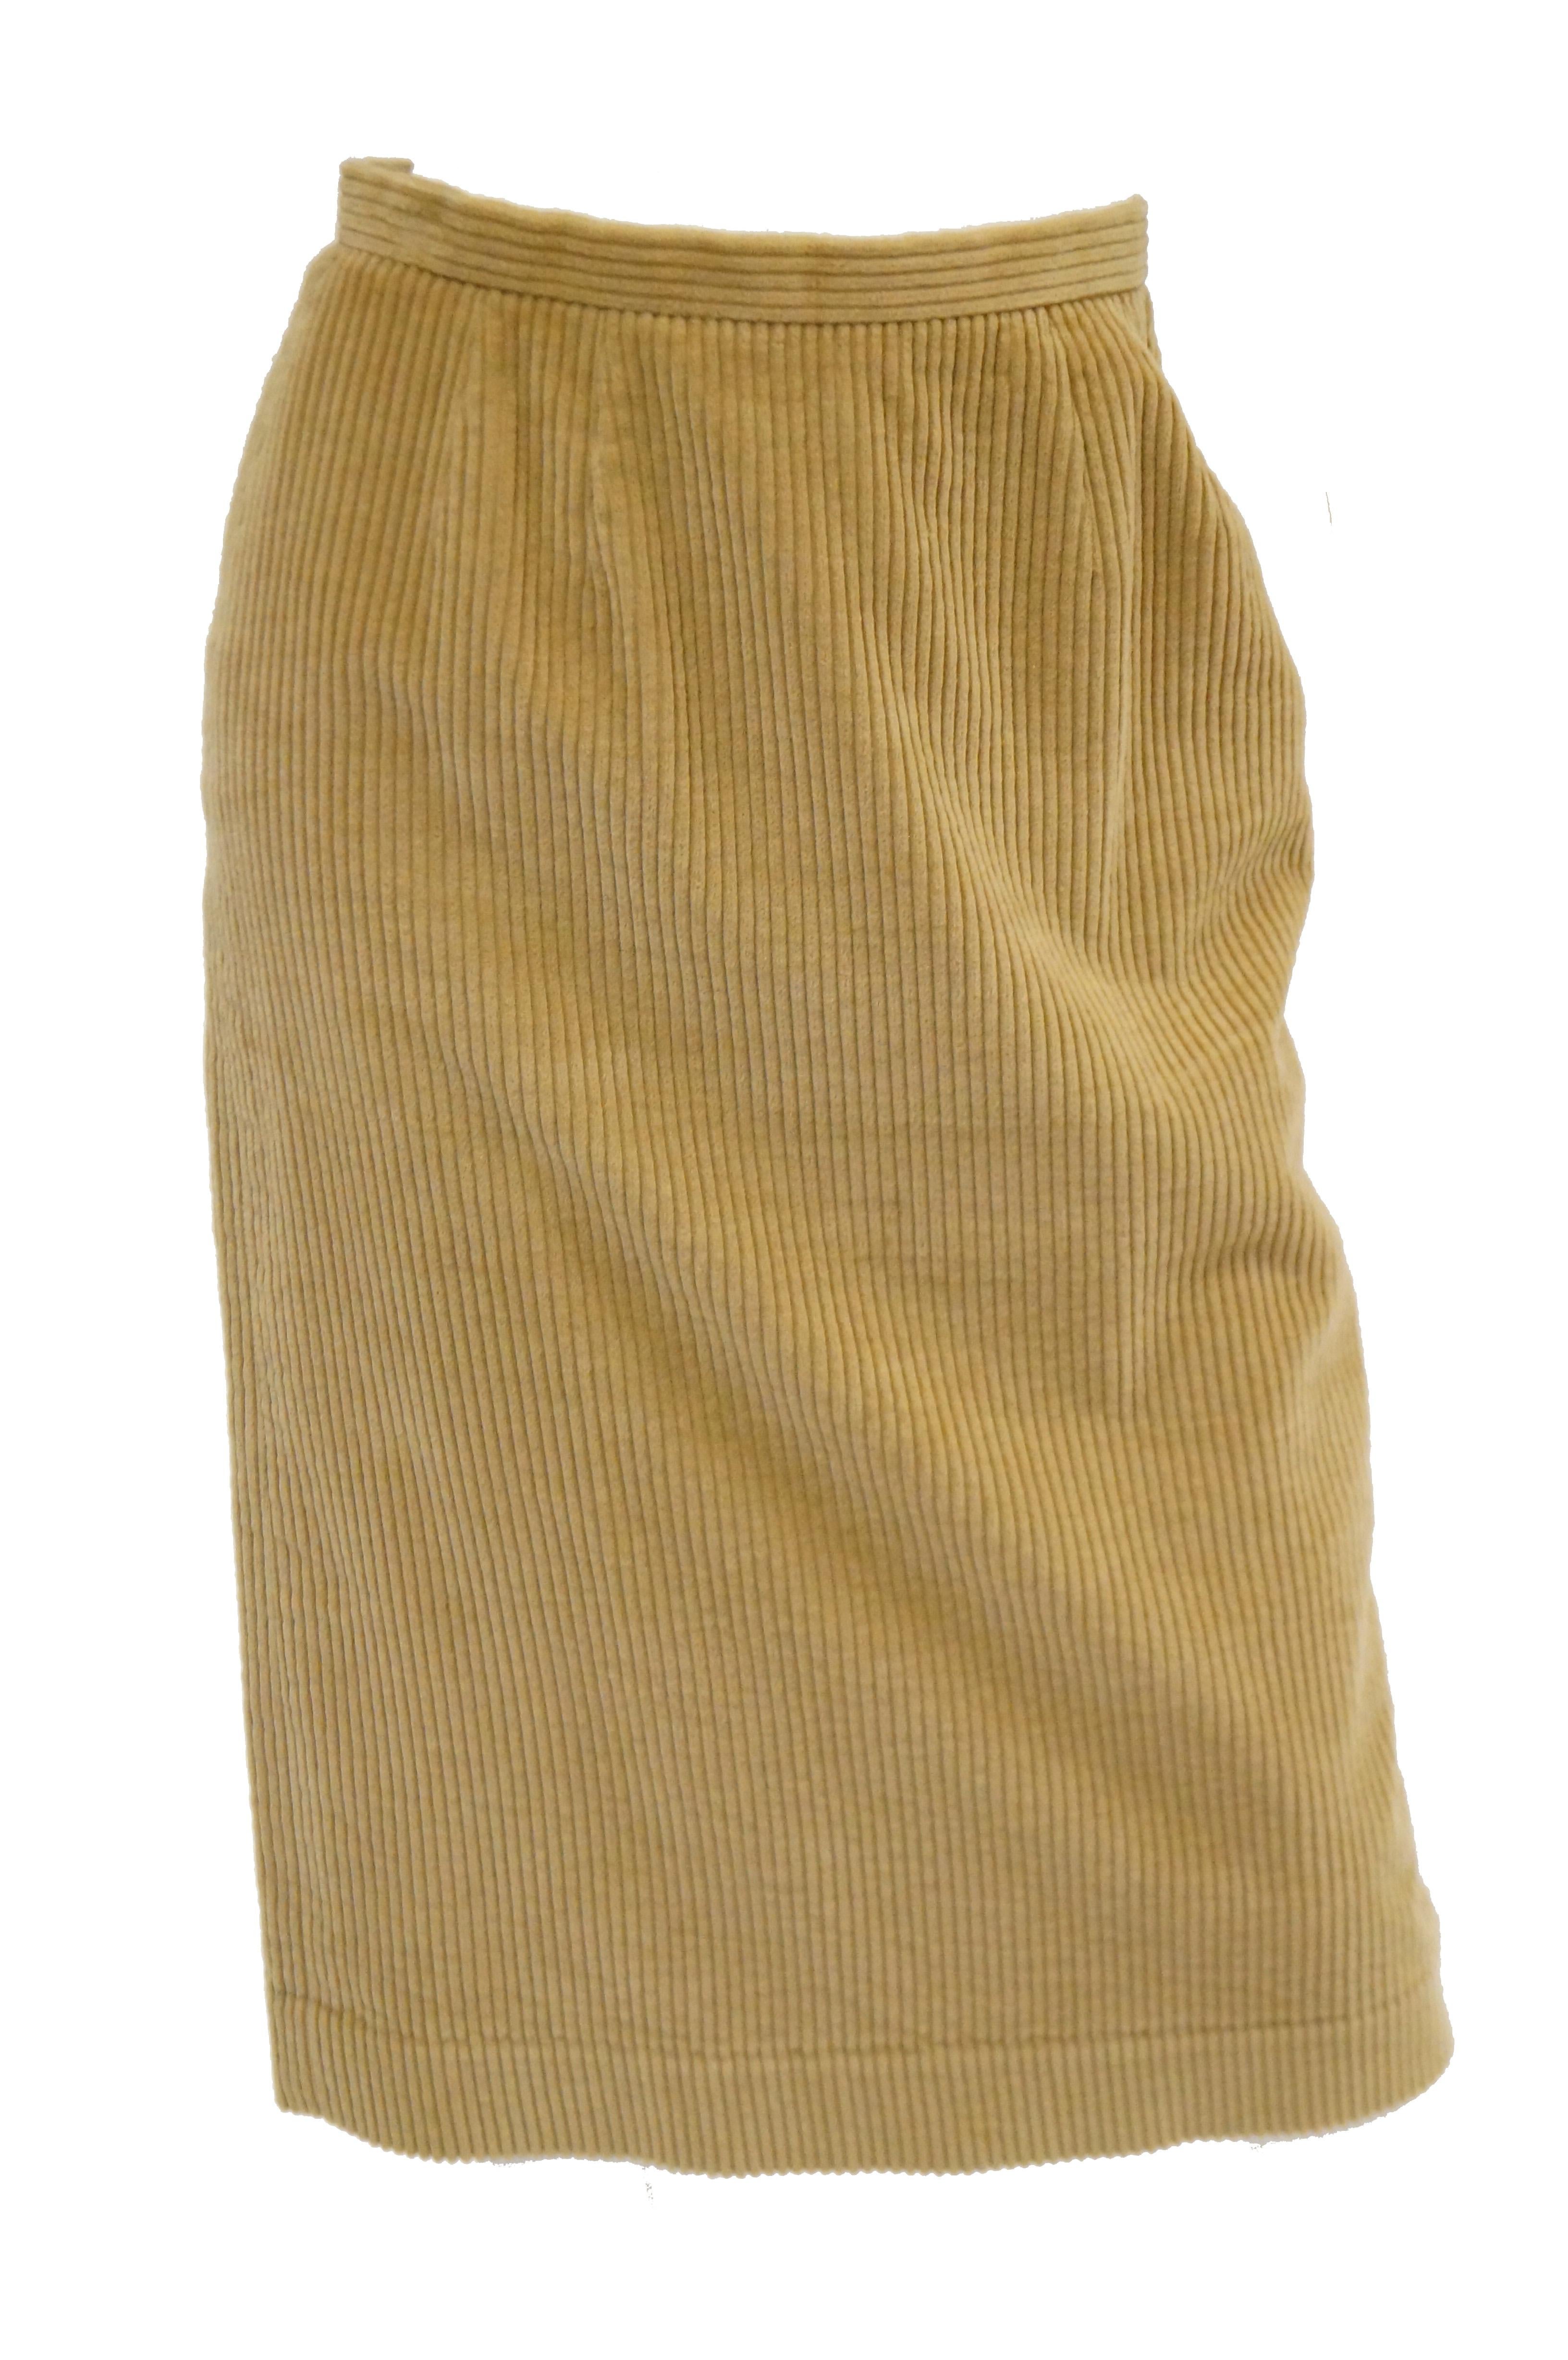 1970s Diane Von Furstenberg Tan Corduroy Skirt Suit For Sale 1